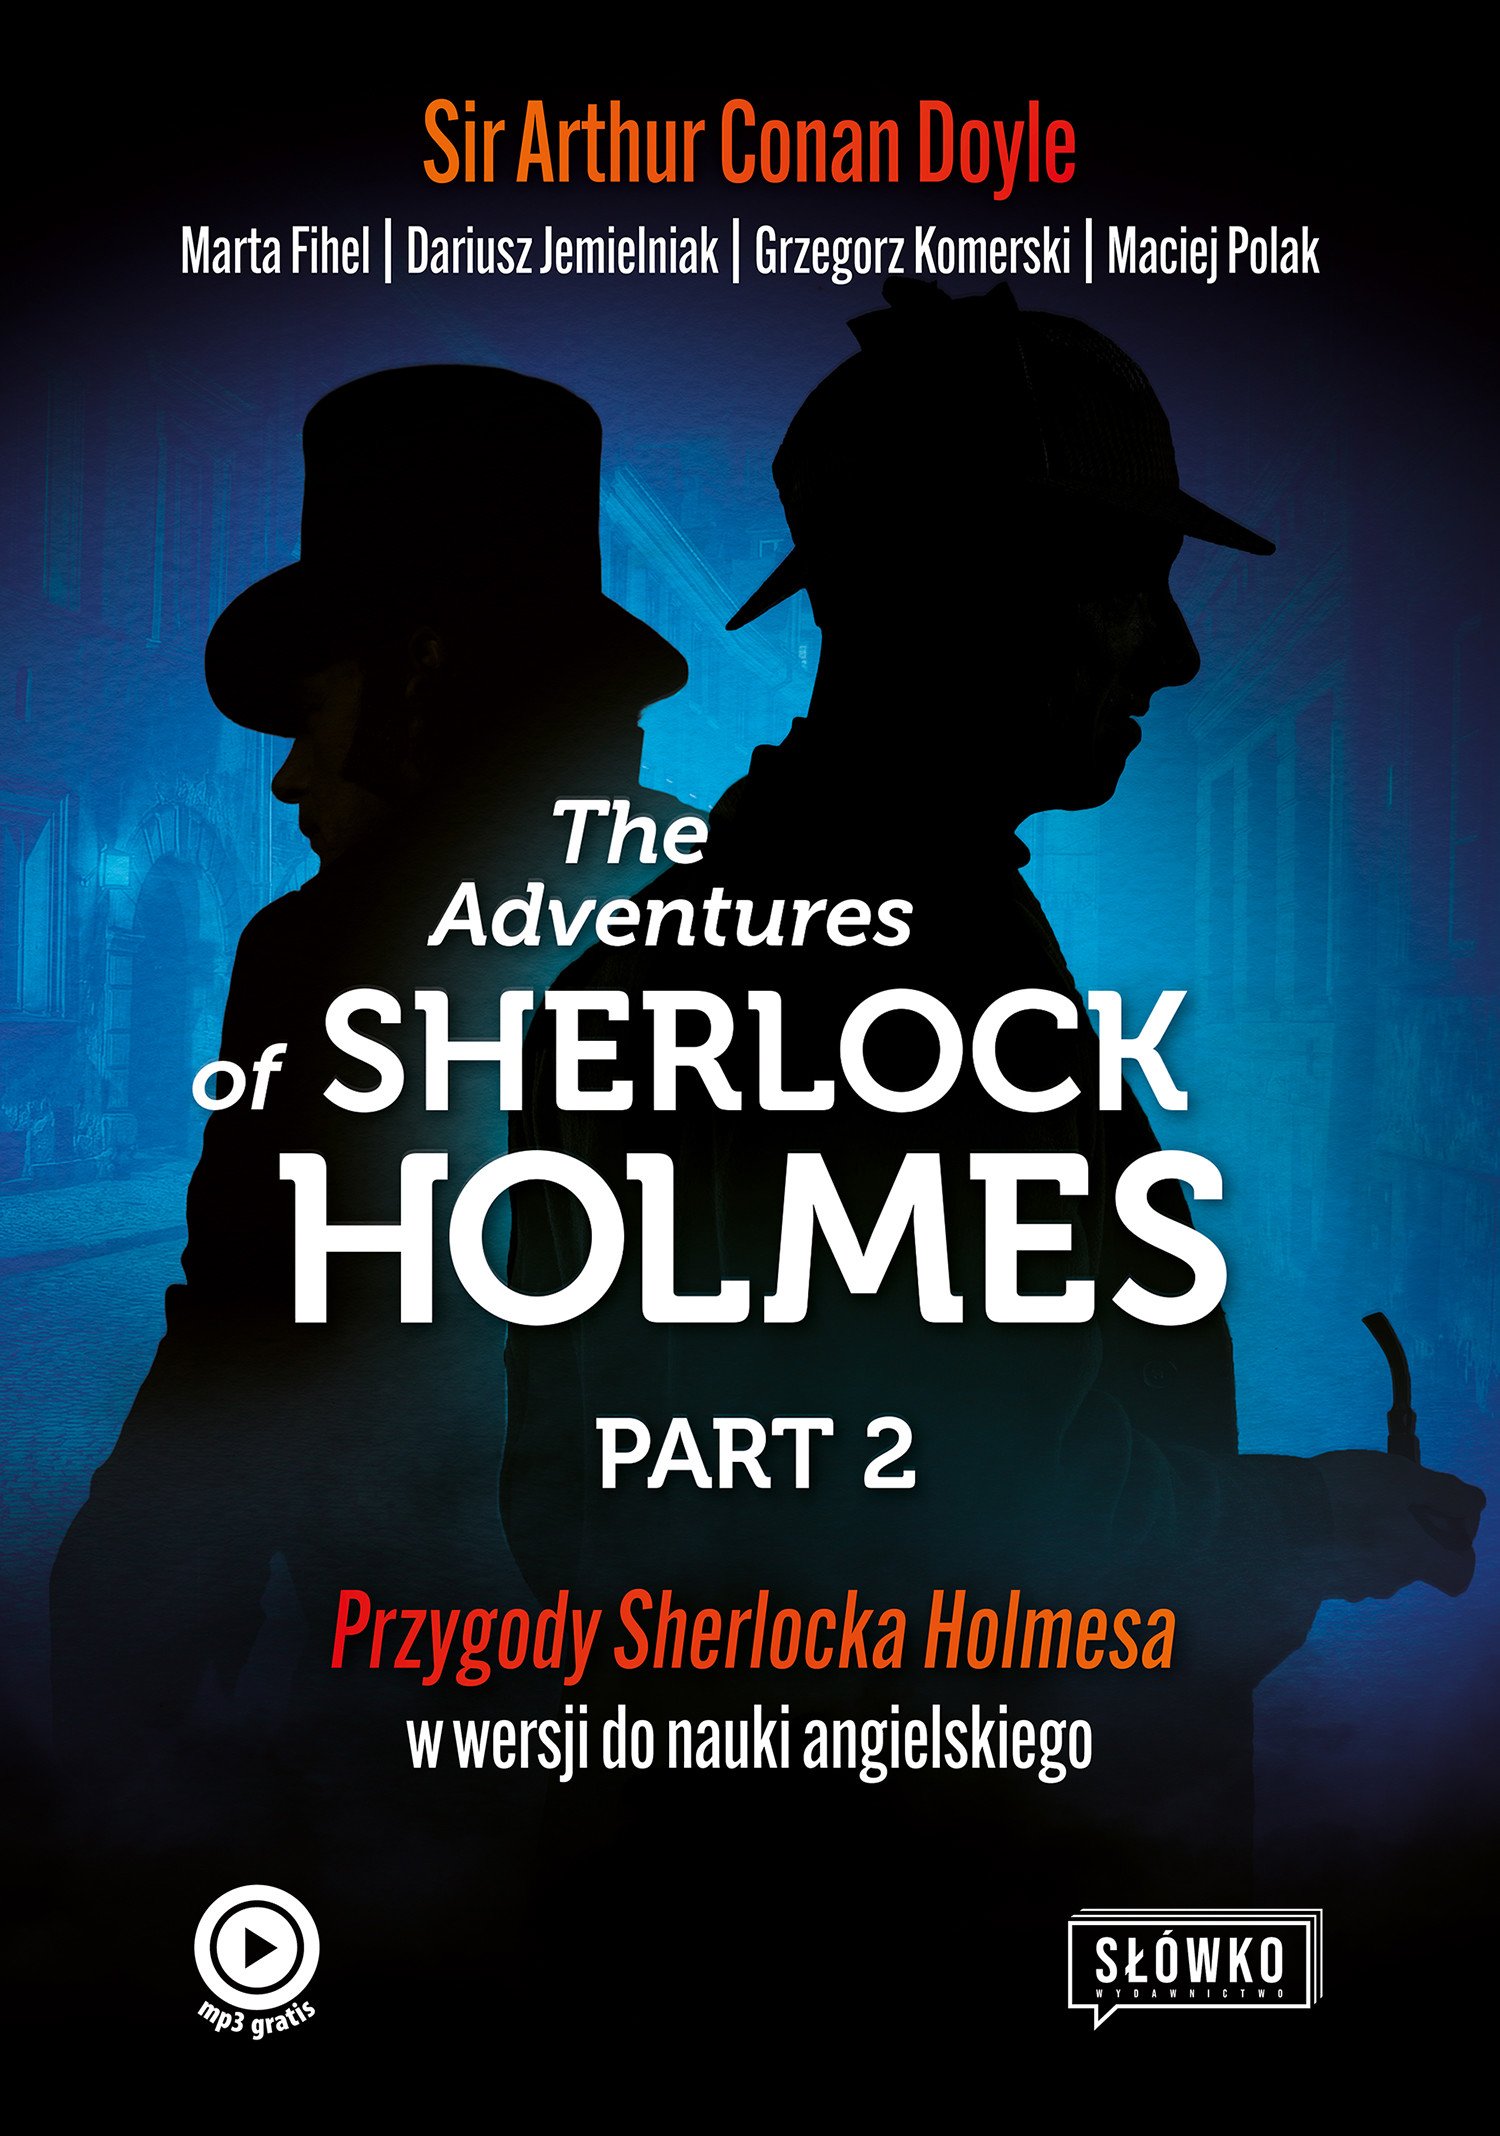 Okładka:The Adventures of Sherlock Holmes Part 2. Ciąg dalszy przygód Sherlocka Holmesa w wersji do nauki angielskiego 